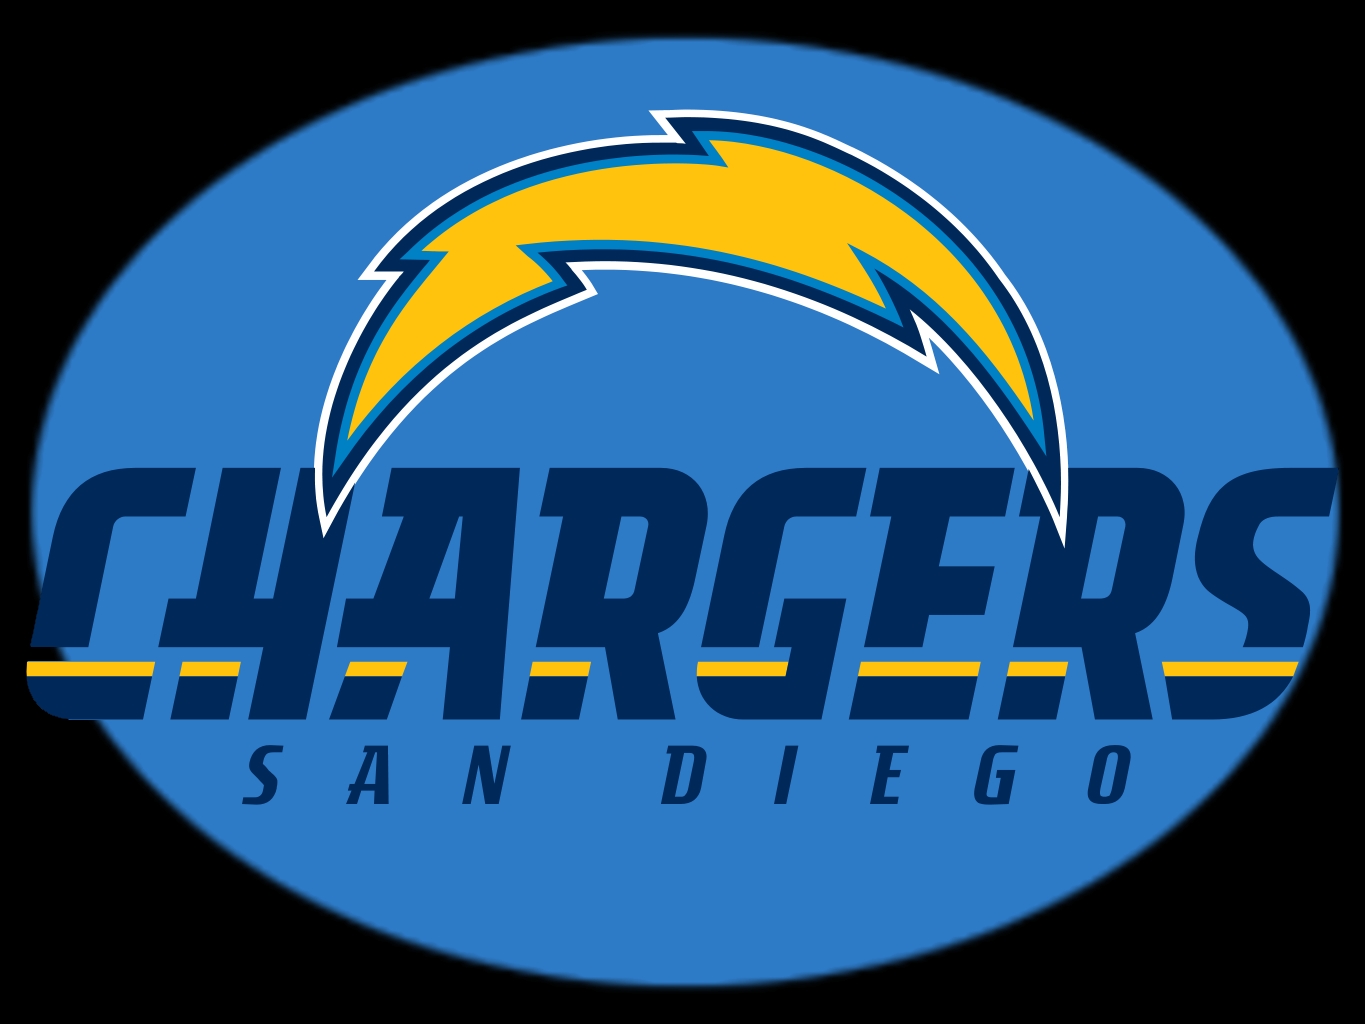 San Diego Chargers 952185 San Diego Chargers 952168 San Diego